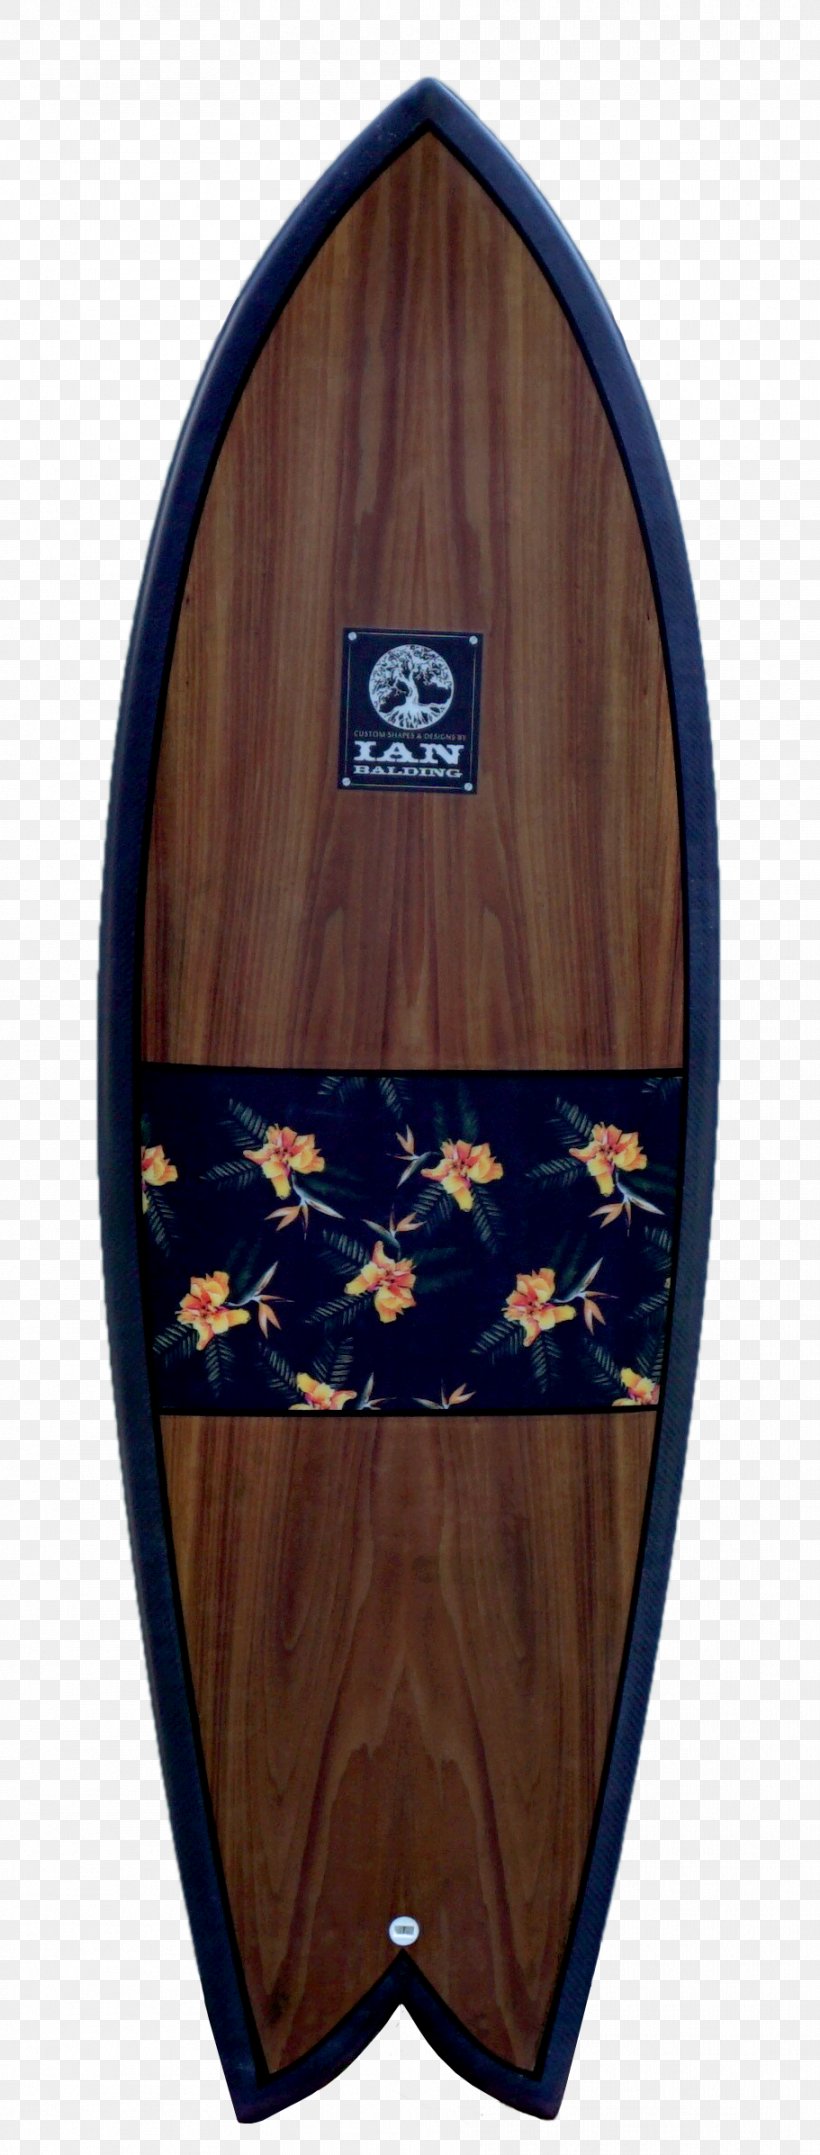 Surfboard Fins Longboard Shortboard Standup Paddleboarding, PNG, 911x2395px, Surfboard, Blog, Boat, Fin, Ian Balding Download Free